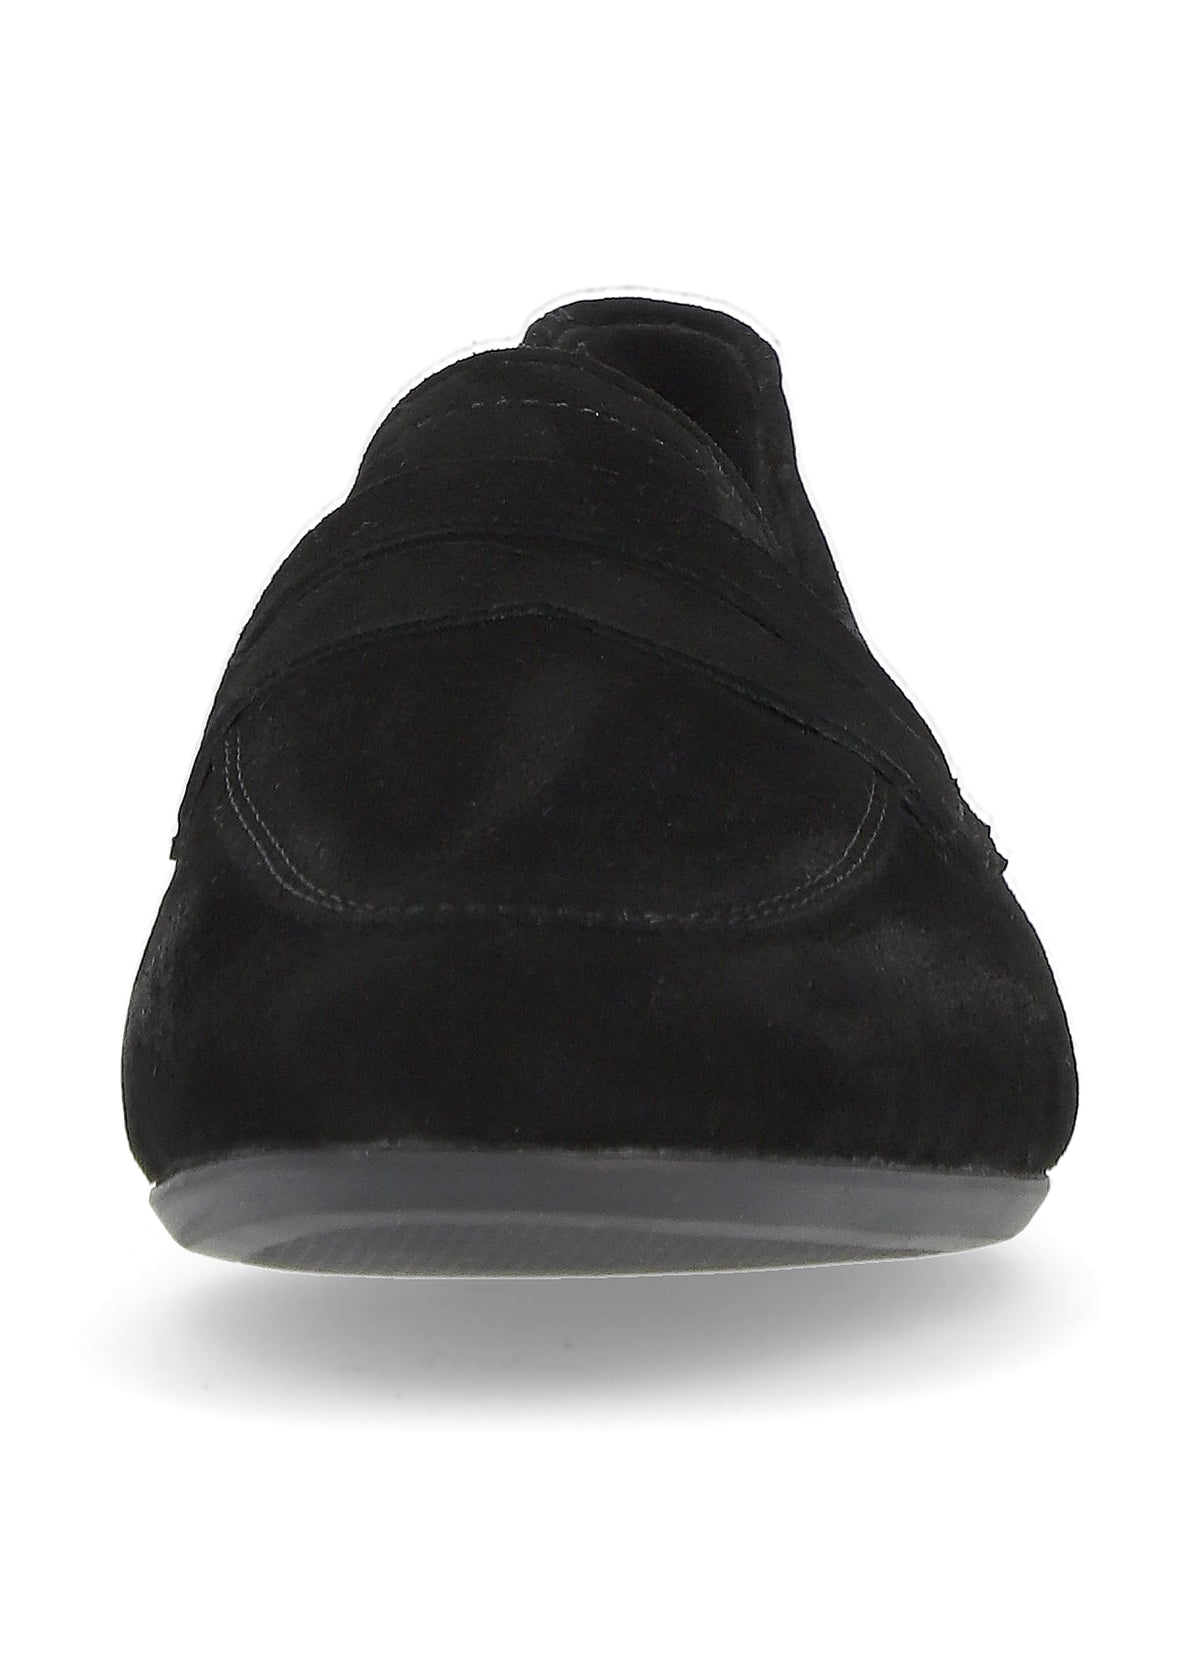 Loaferit - musta mokkanahka, loaferpanta koristeena